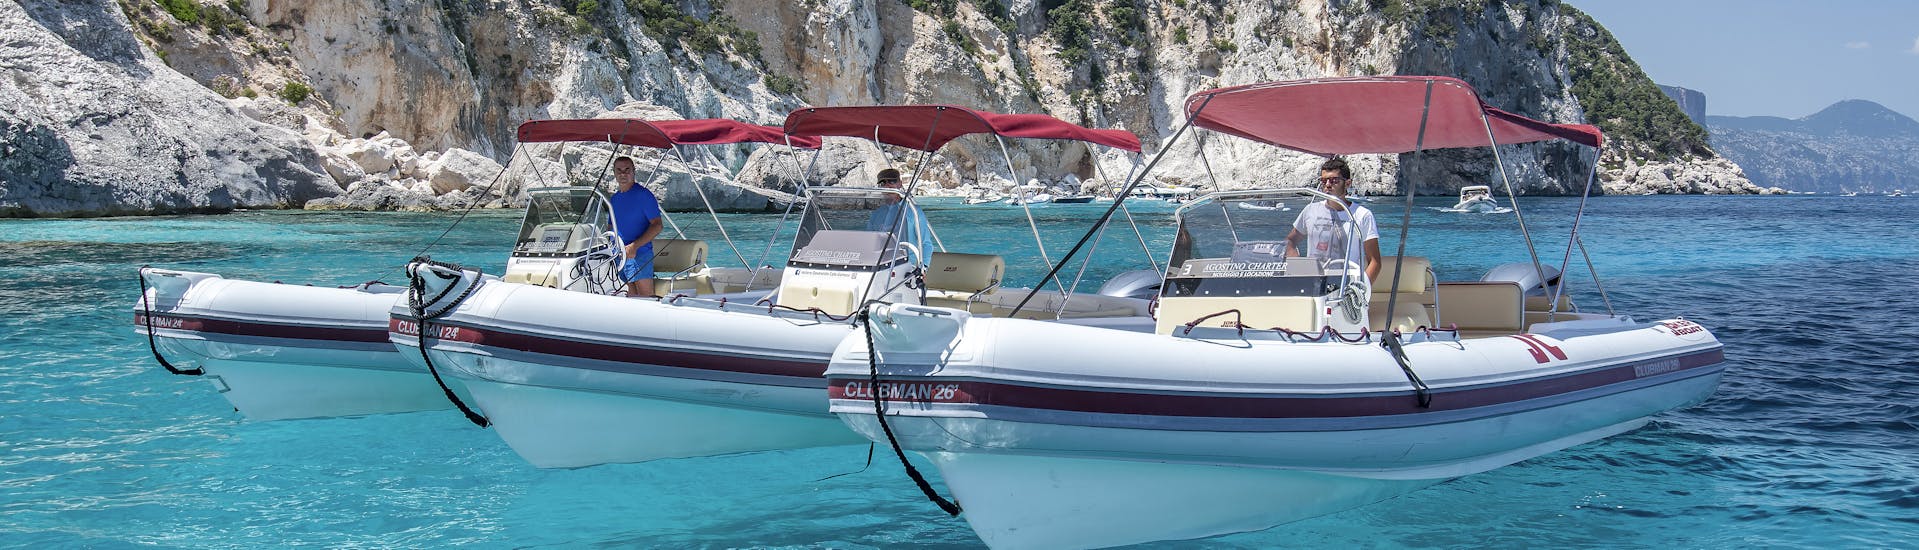 3 de nos bateaux pneumatiques sont côte à côte pendant la location de bateaux pneumatiques à Cala Gonone (jusqu'à 10 personnes) avec Dovesesto.